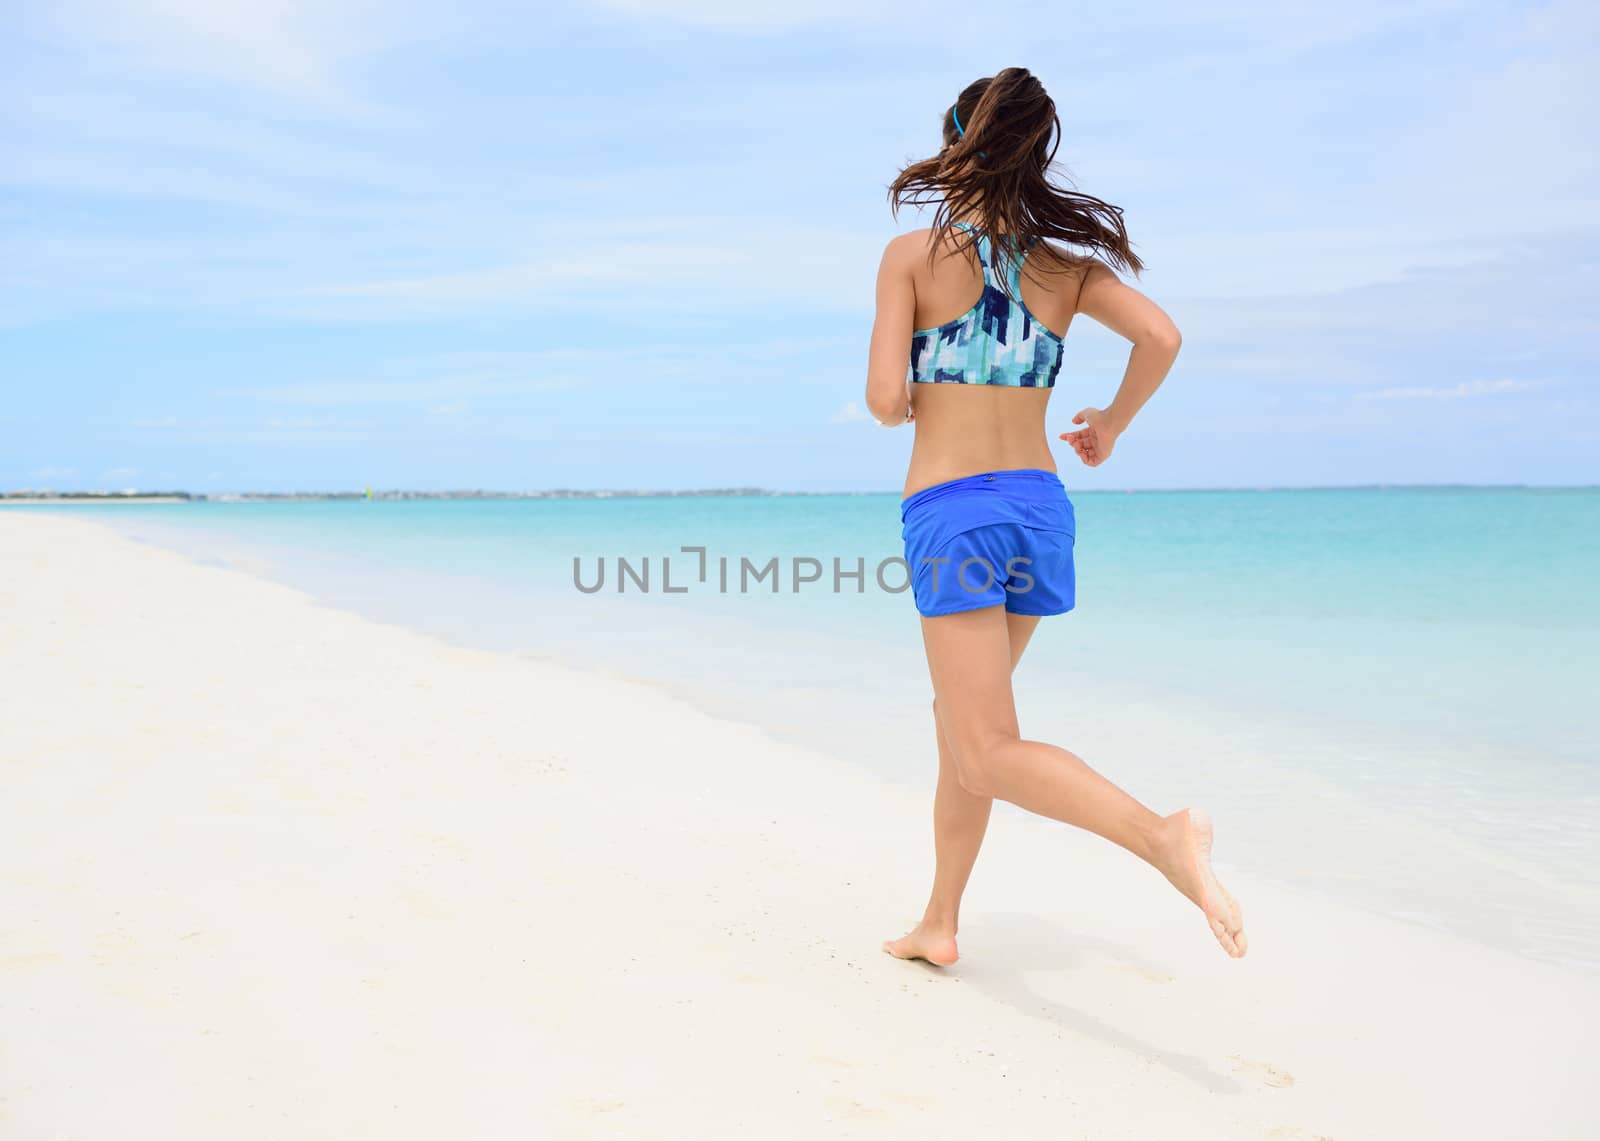 Runner training cardio running on beach by Maridav